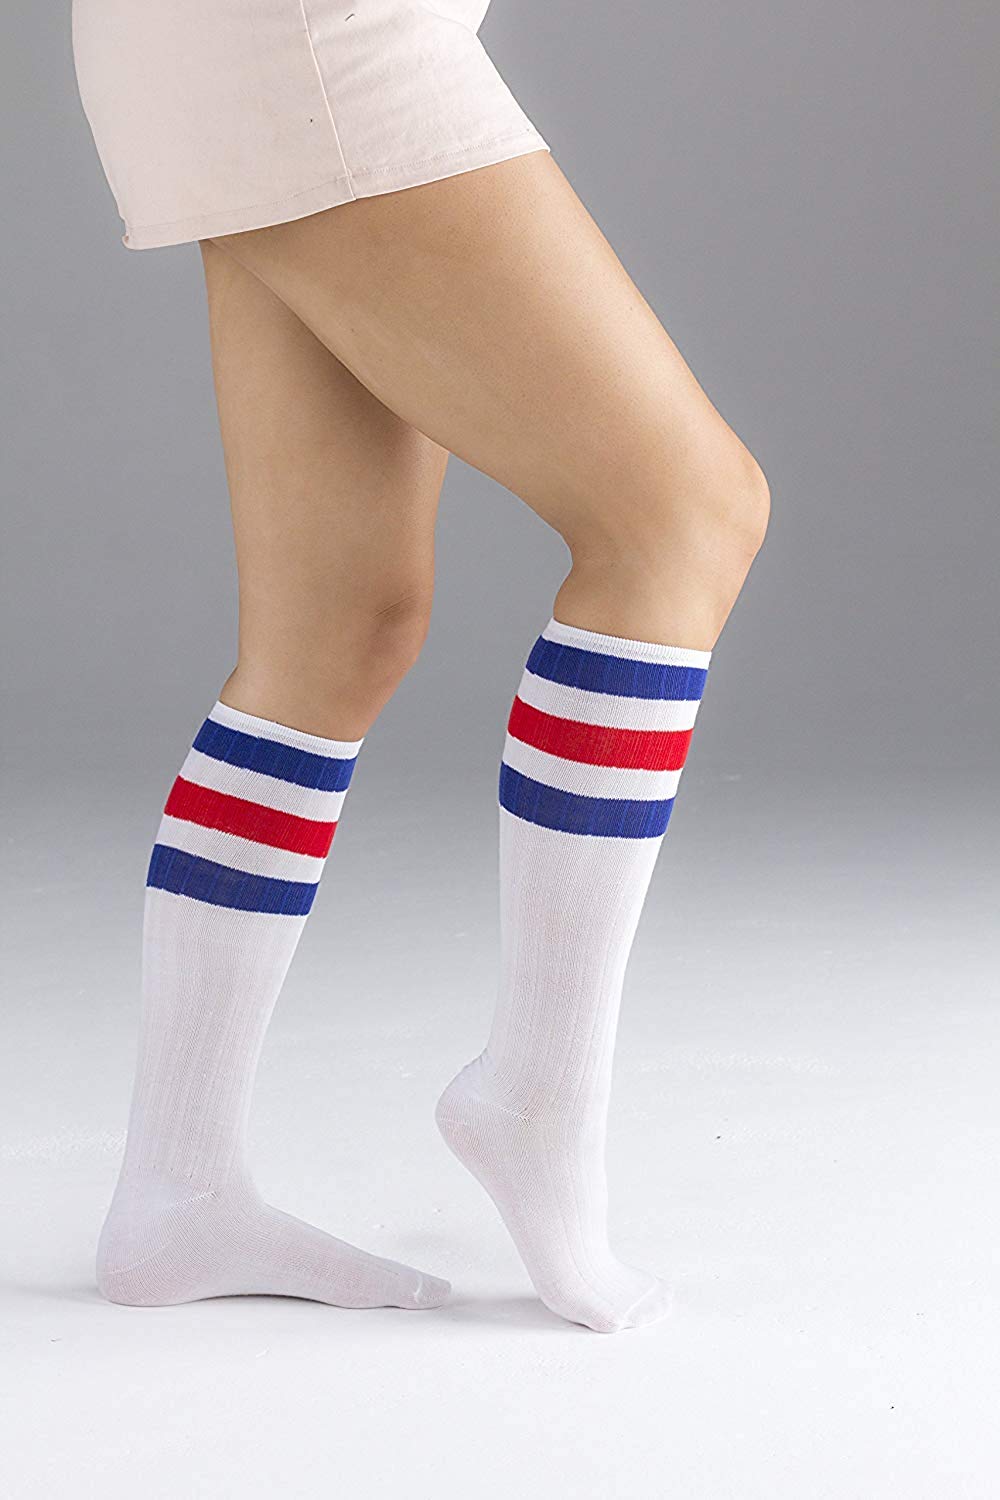 men's tube socks 1